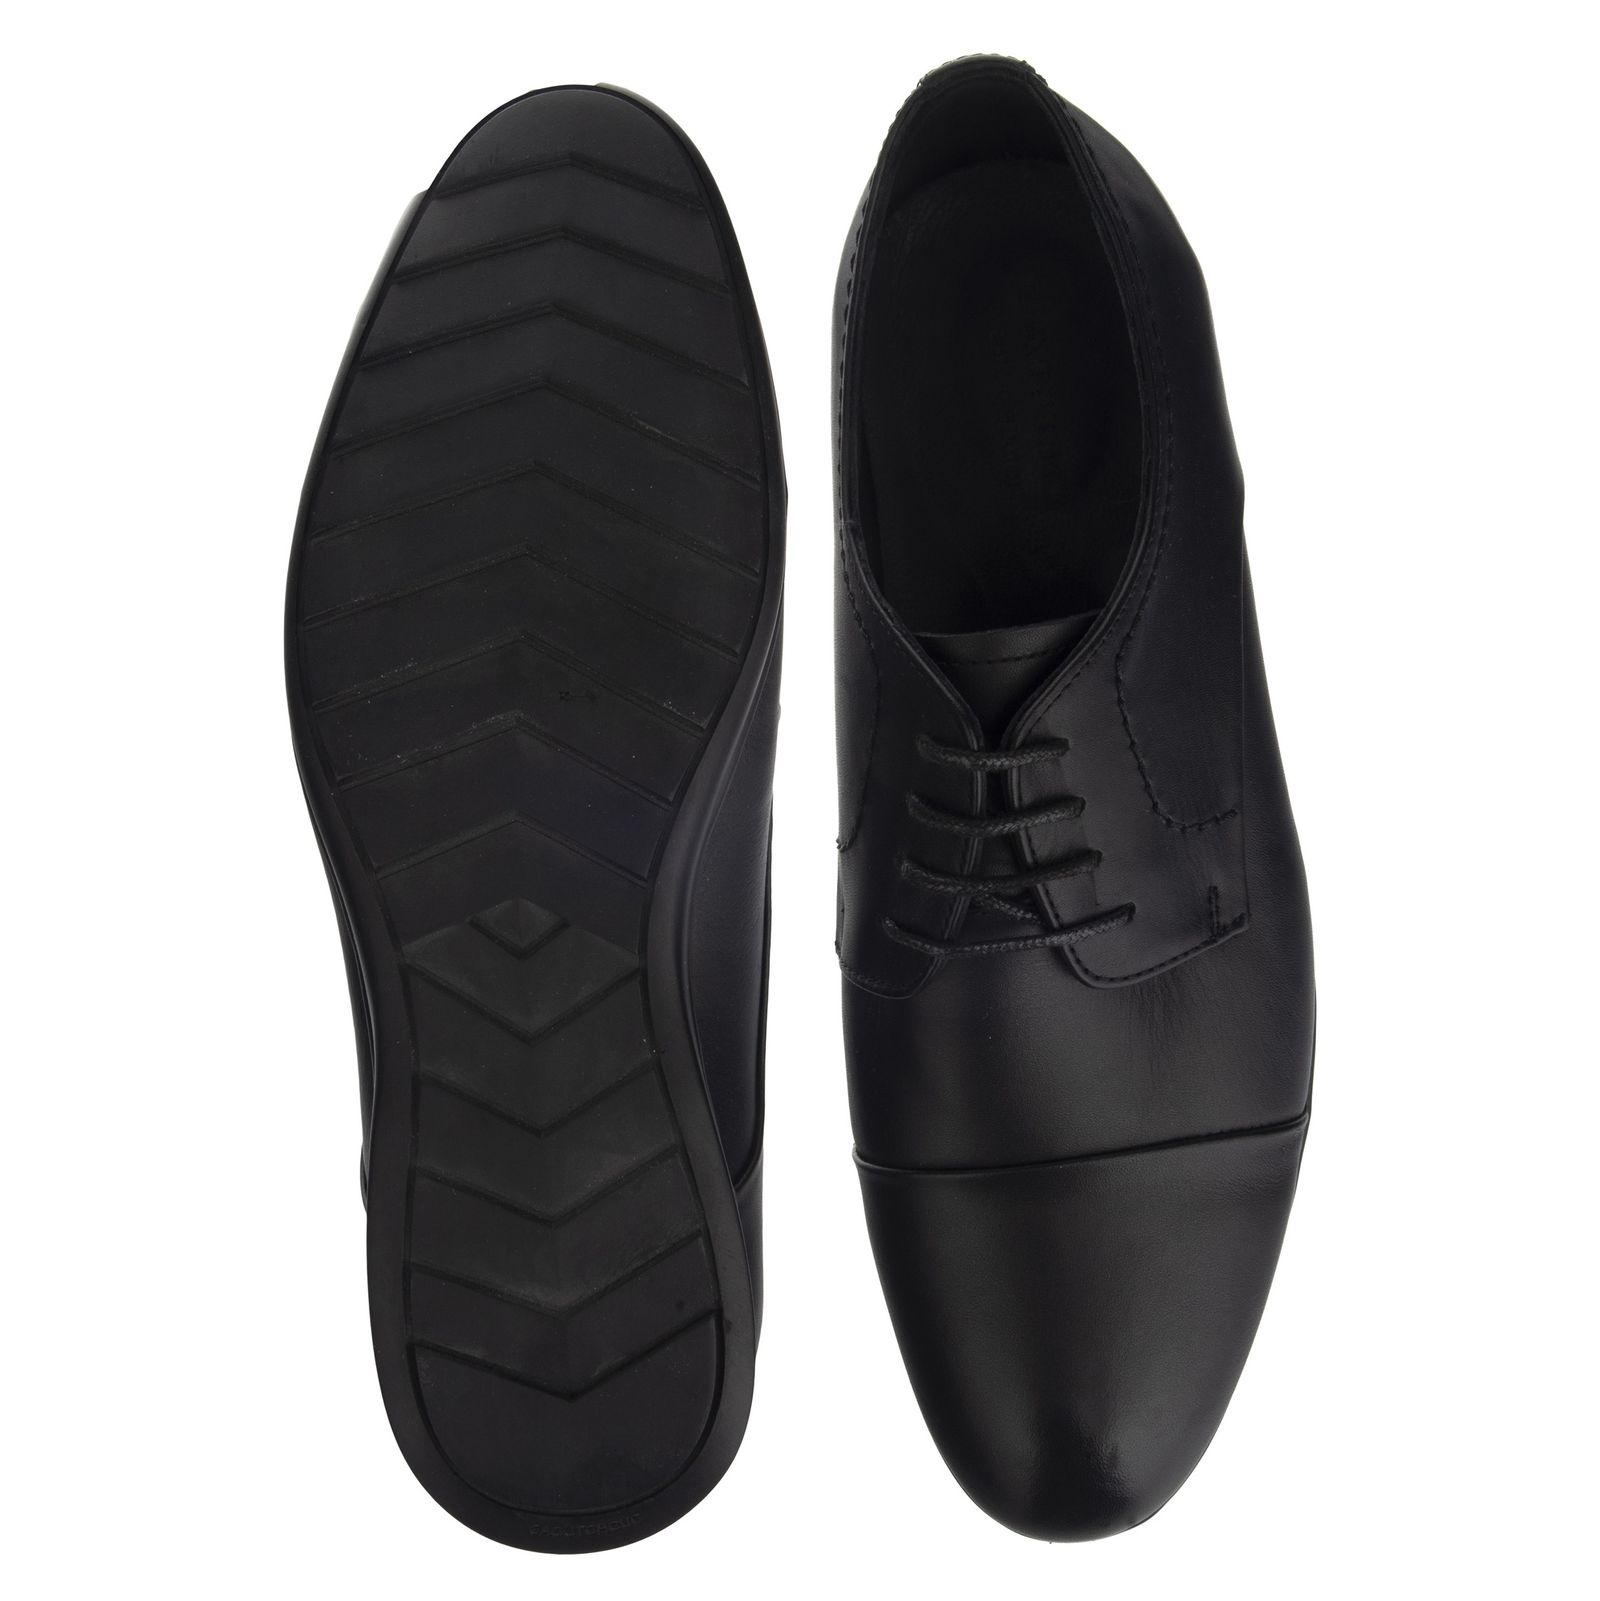 کفش مردانه گاندو مدل 713-99 - مشکی - 6